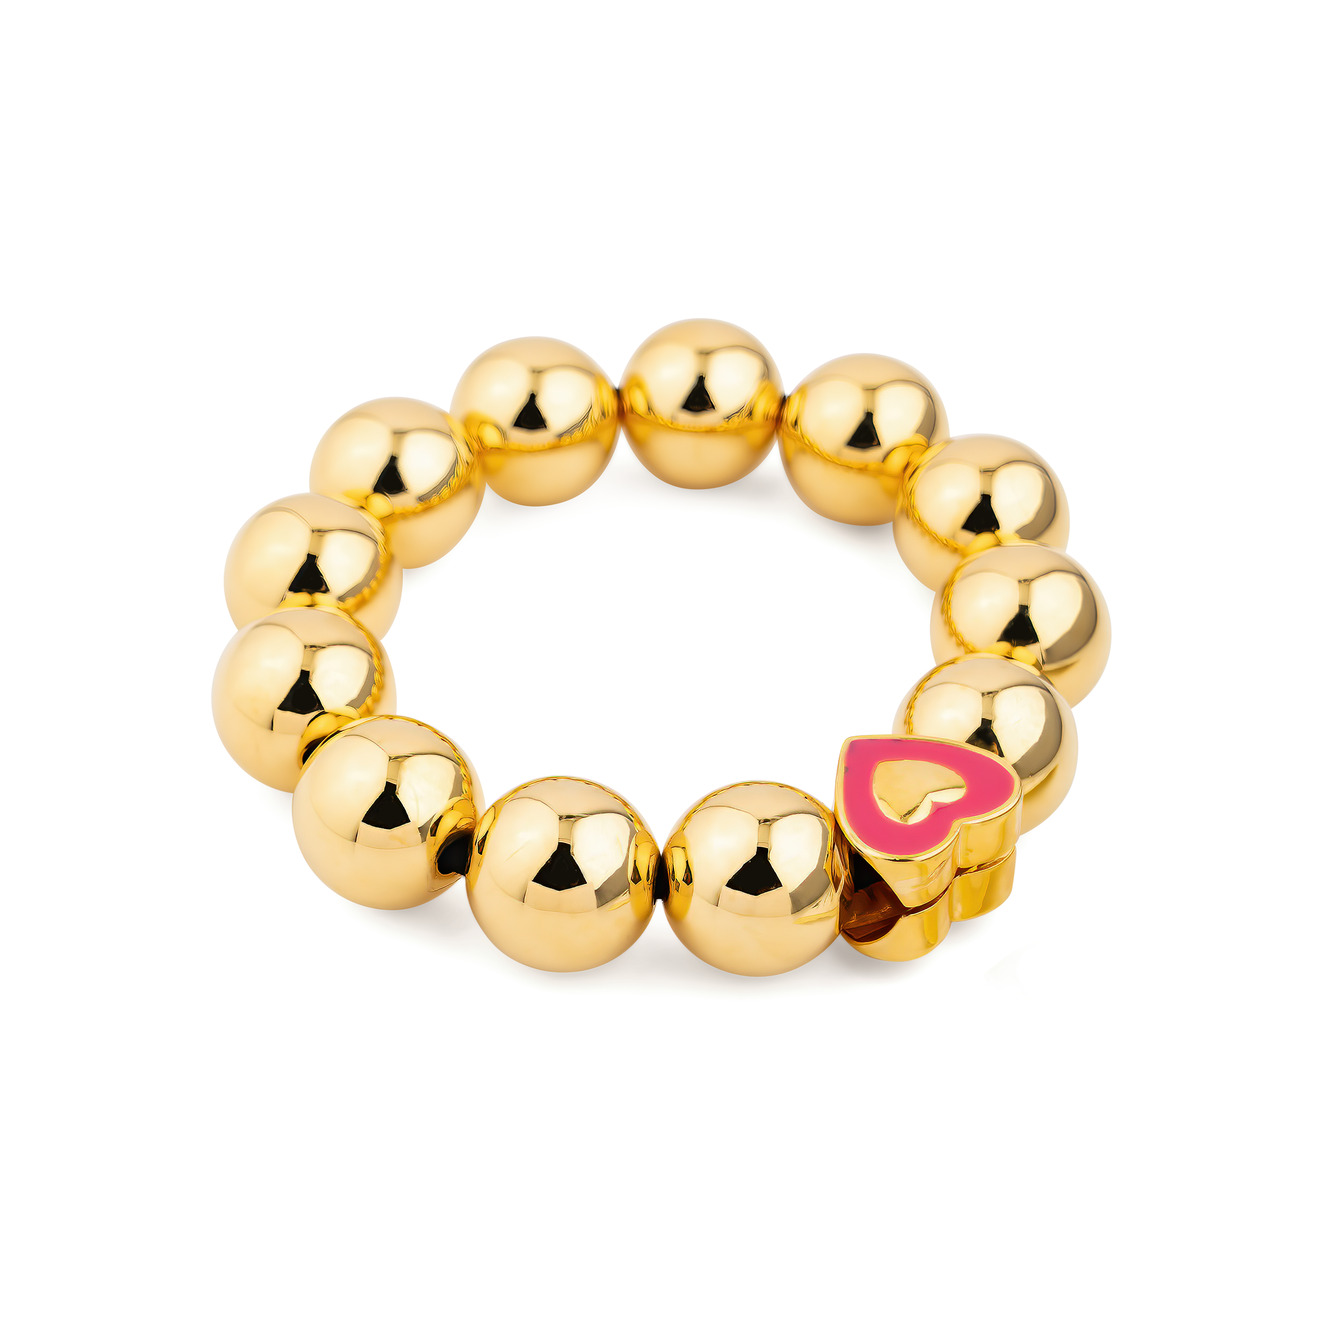 Free Form Jewelry Золотистый браслет из крупных шариков с красным сердцем